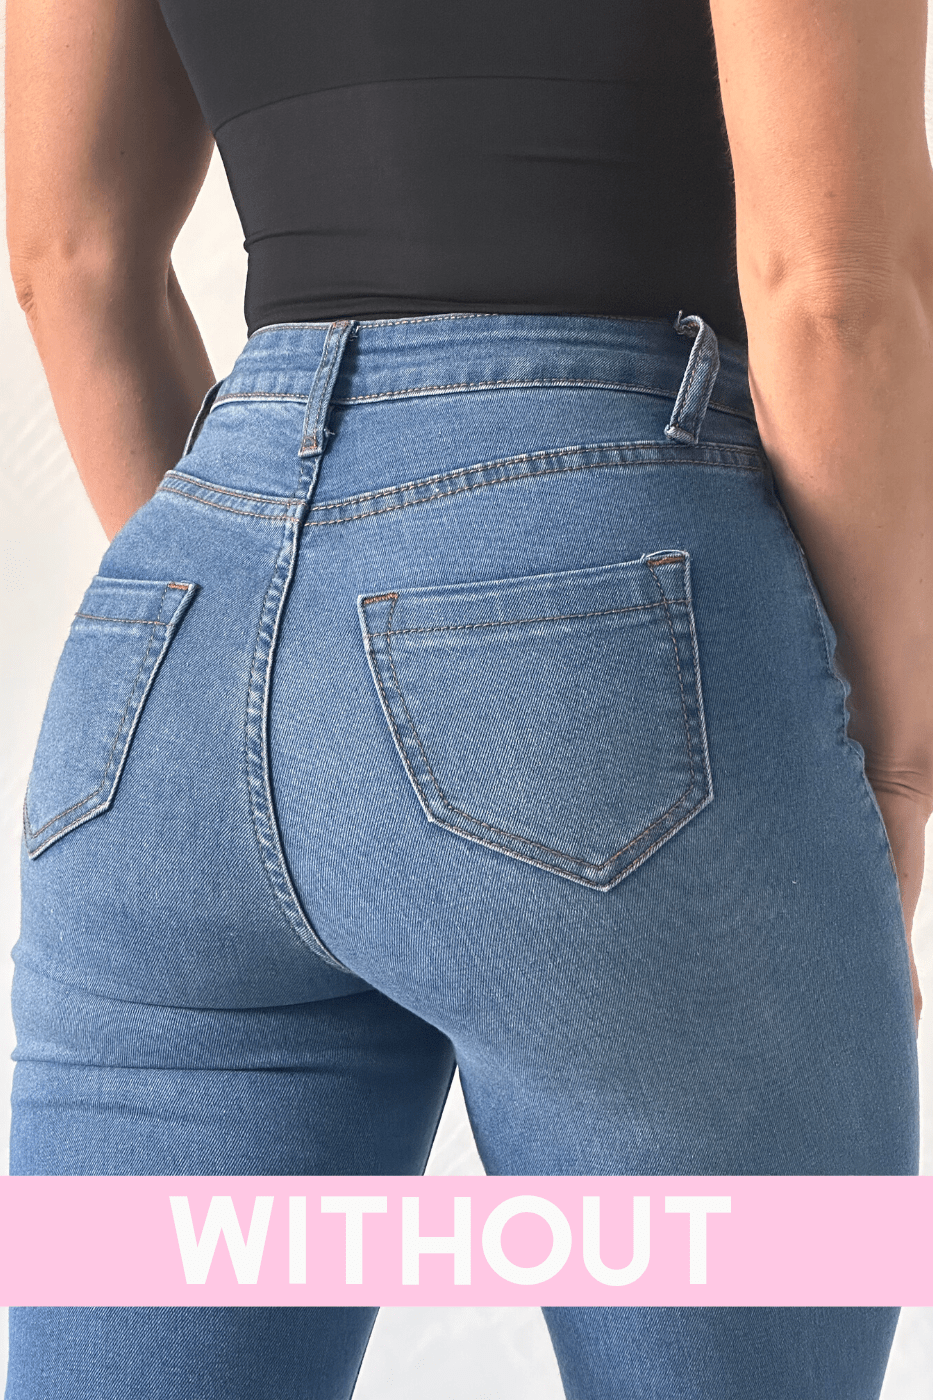 Buy M&D 0323 Women's Butt Lifter Slimmer Shorts